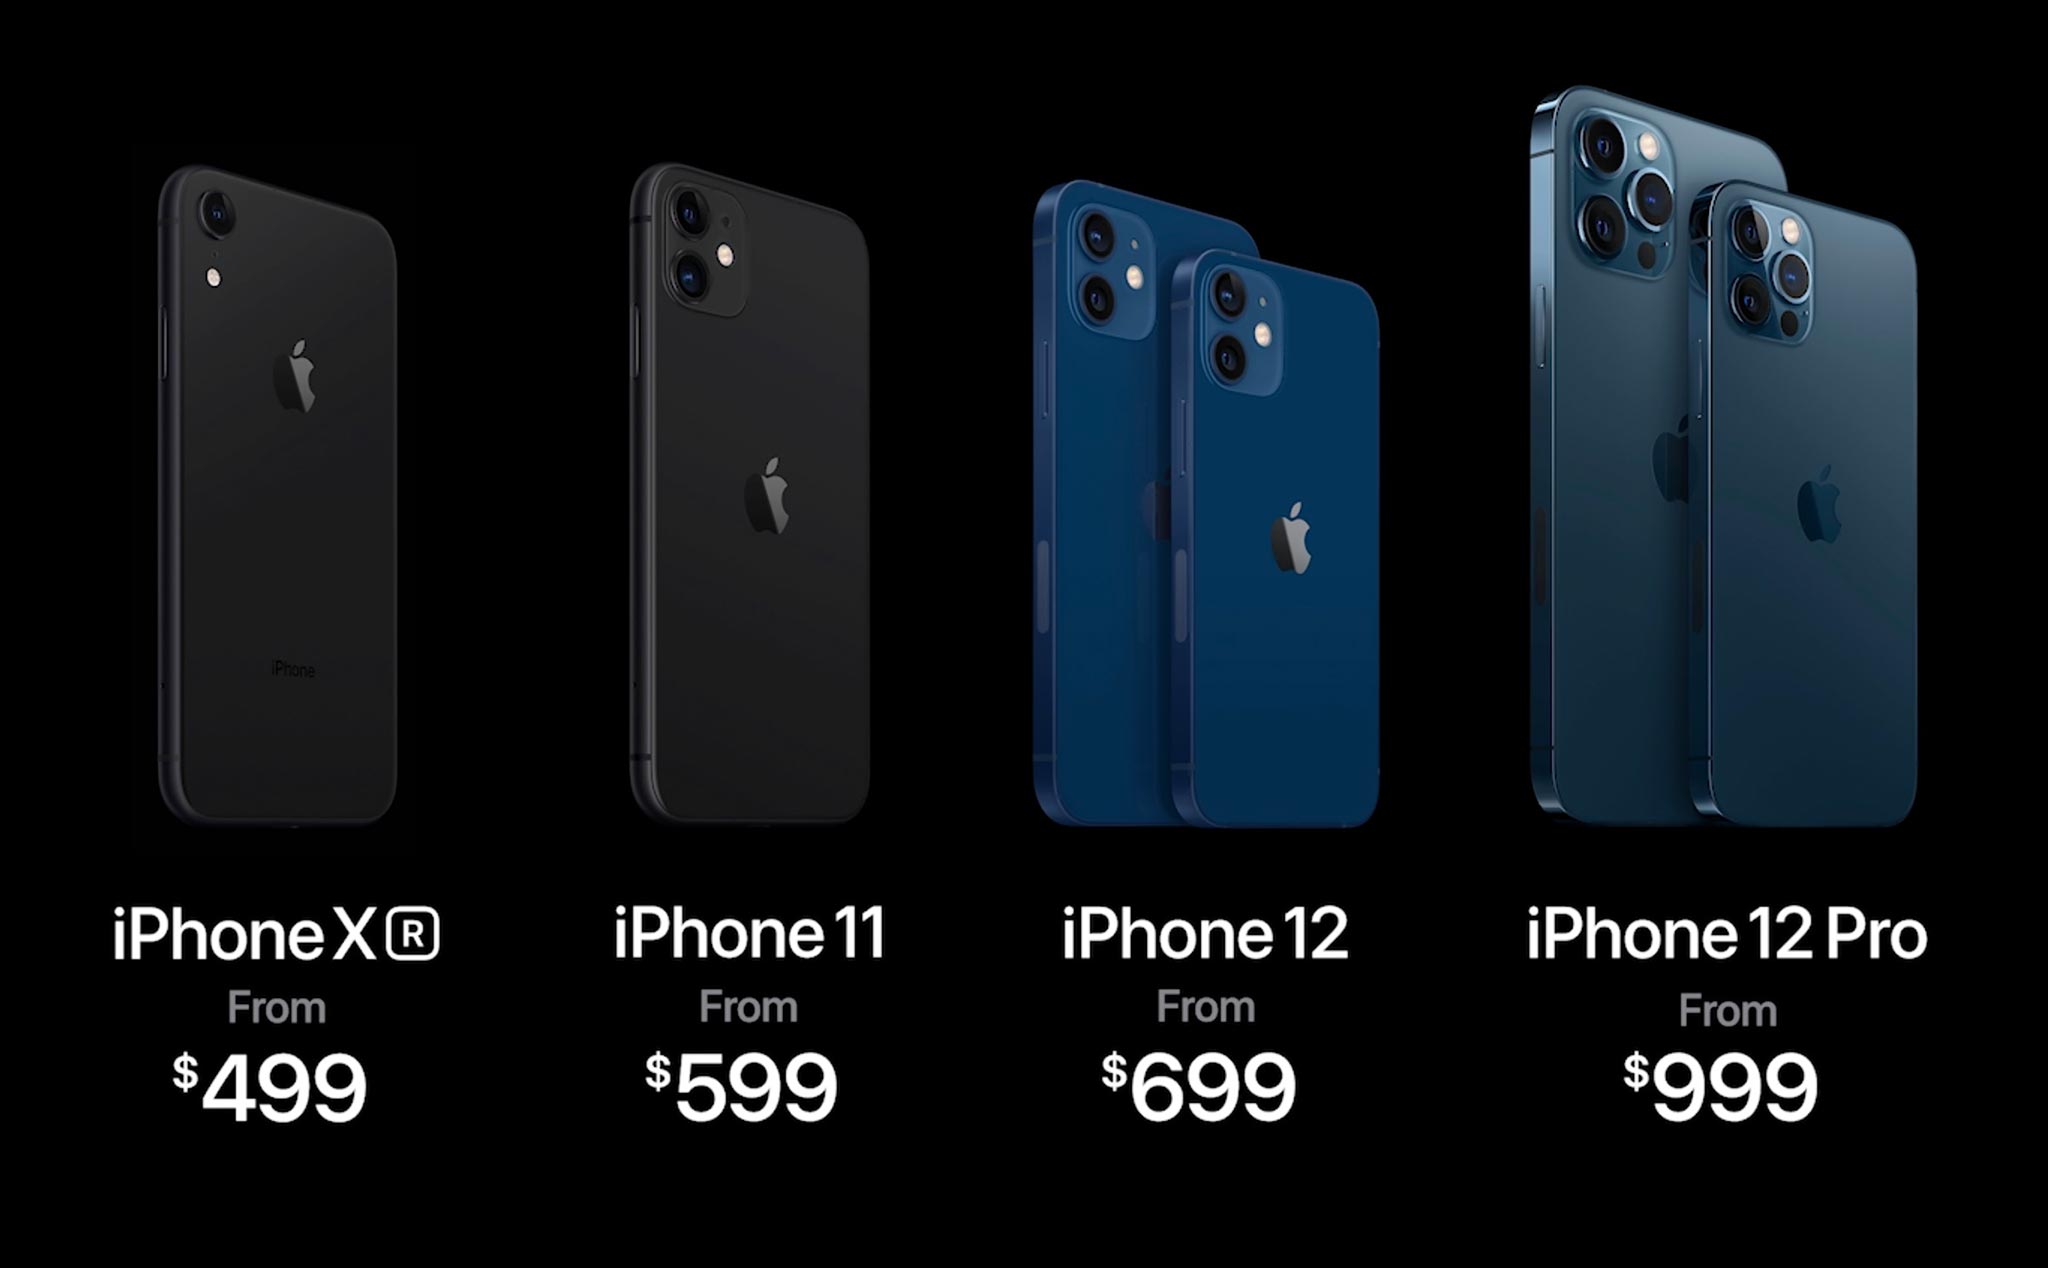 Apple giảm giá iPhone XR còn $499, iPhone 11 còn $599, ngừng bán iPhone 11 Pro